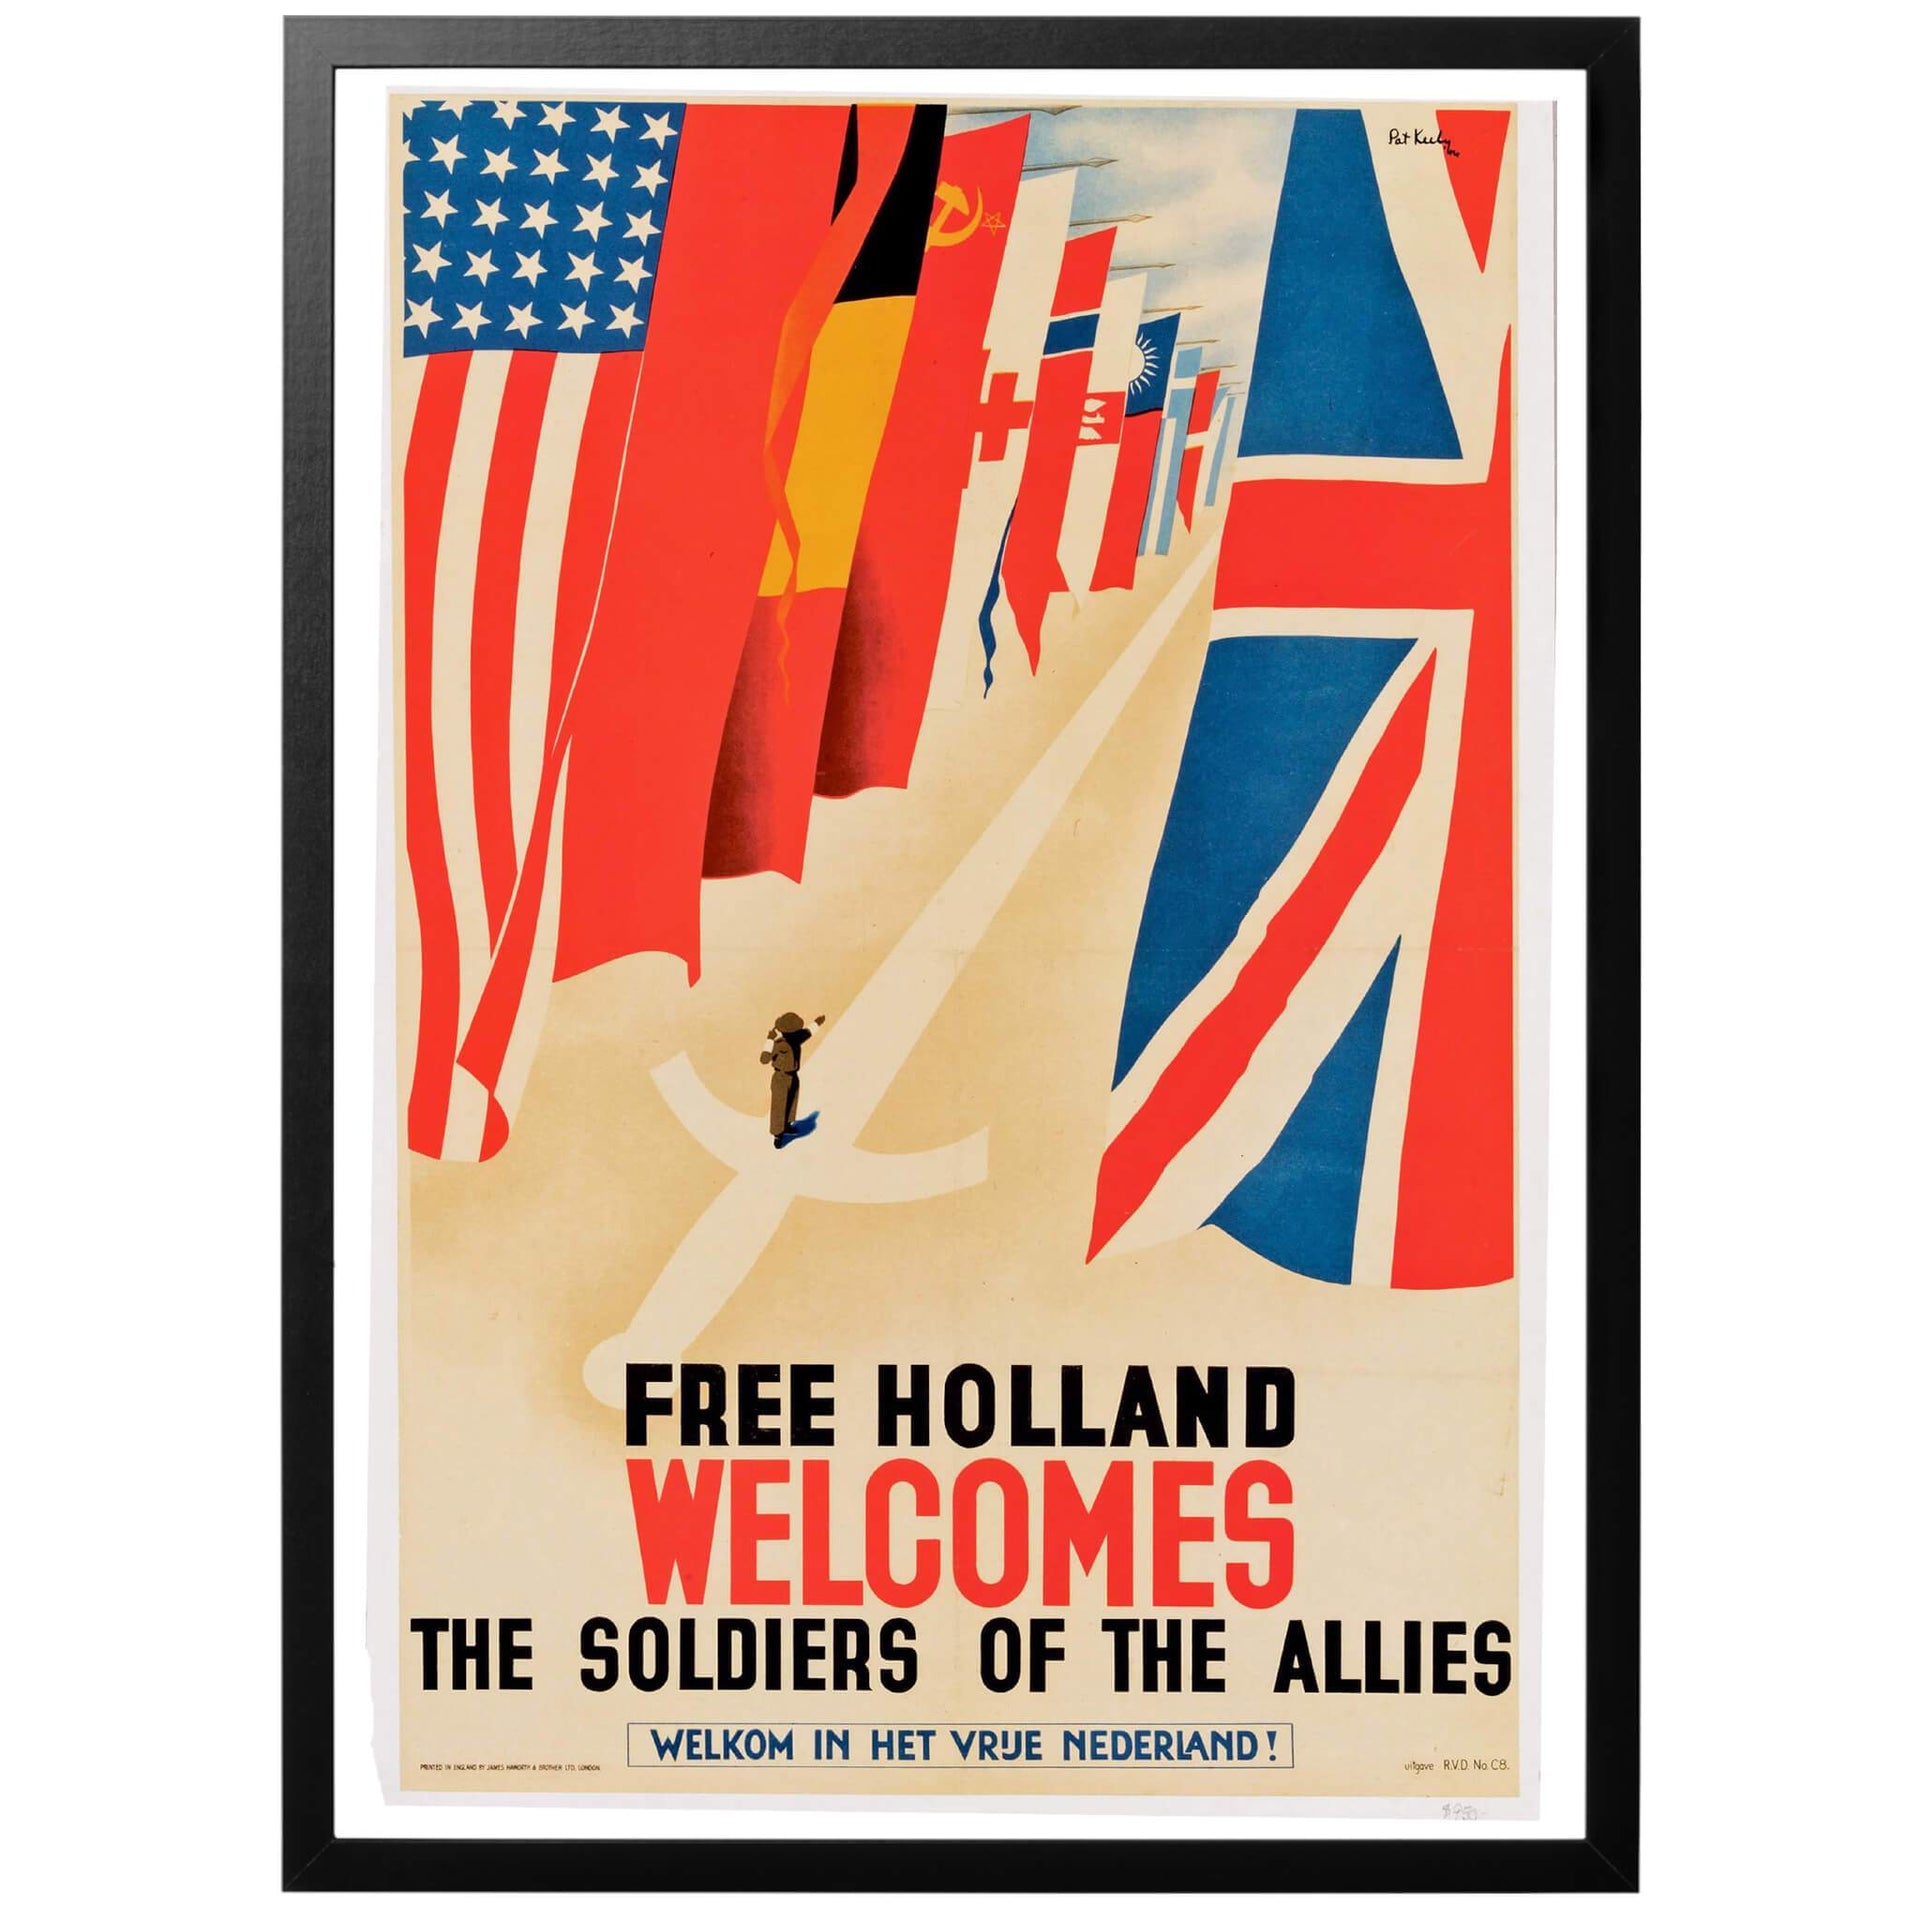 Free Holland Welcomes the soldiers of the Allies - Fria Holland välkomnar de Allierade Soldaterna. Nederländsk/Brittisk WWII affisch från 1944. Färgglad och grafiskt mycket tilltalande affisch från 1944, framtagen i Storbritannien av den kände konstnären Pat Keely. Vi skickar med PostNord.